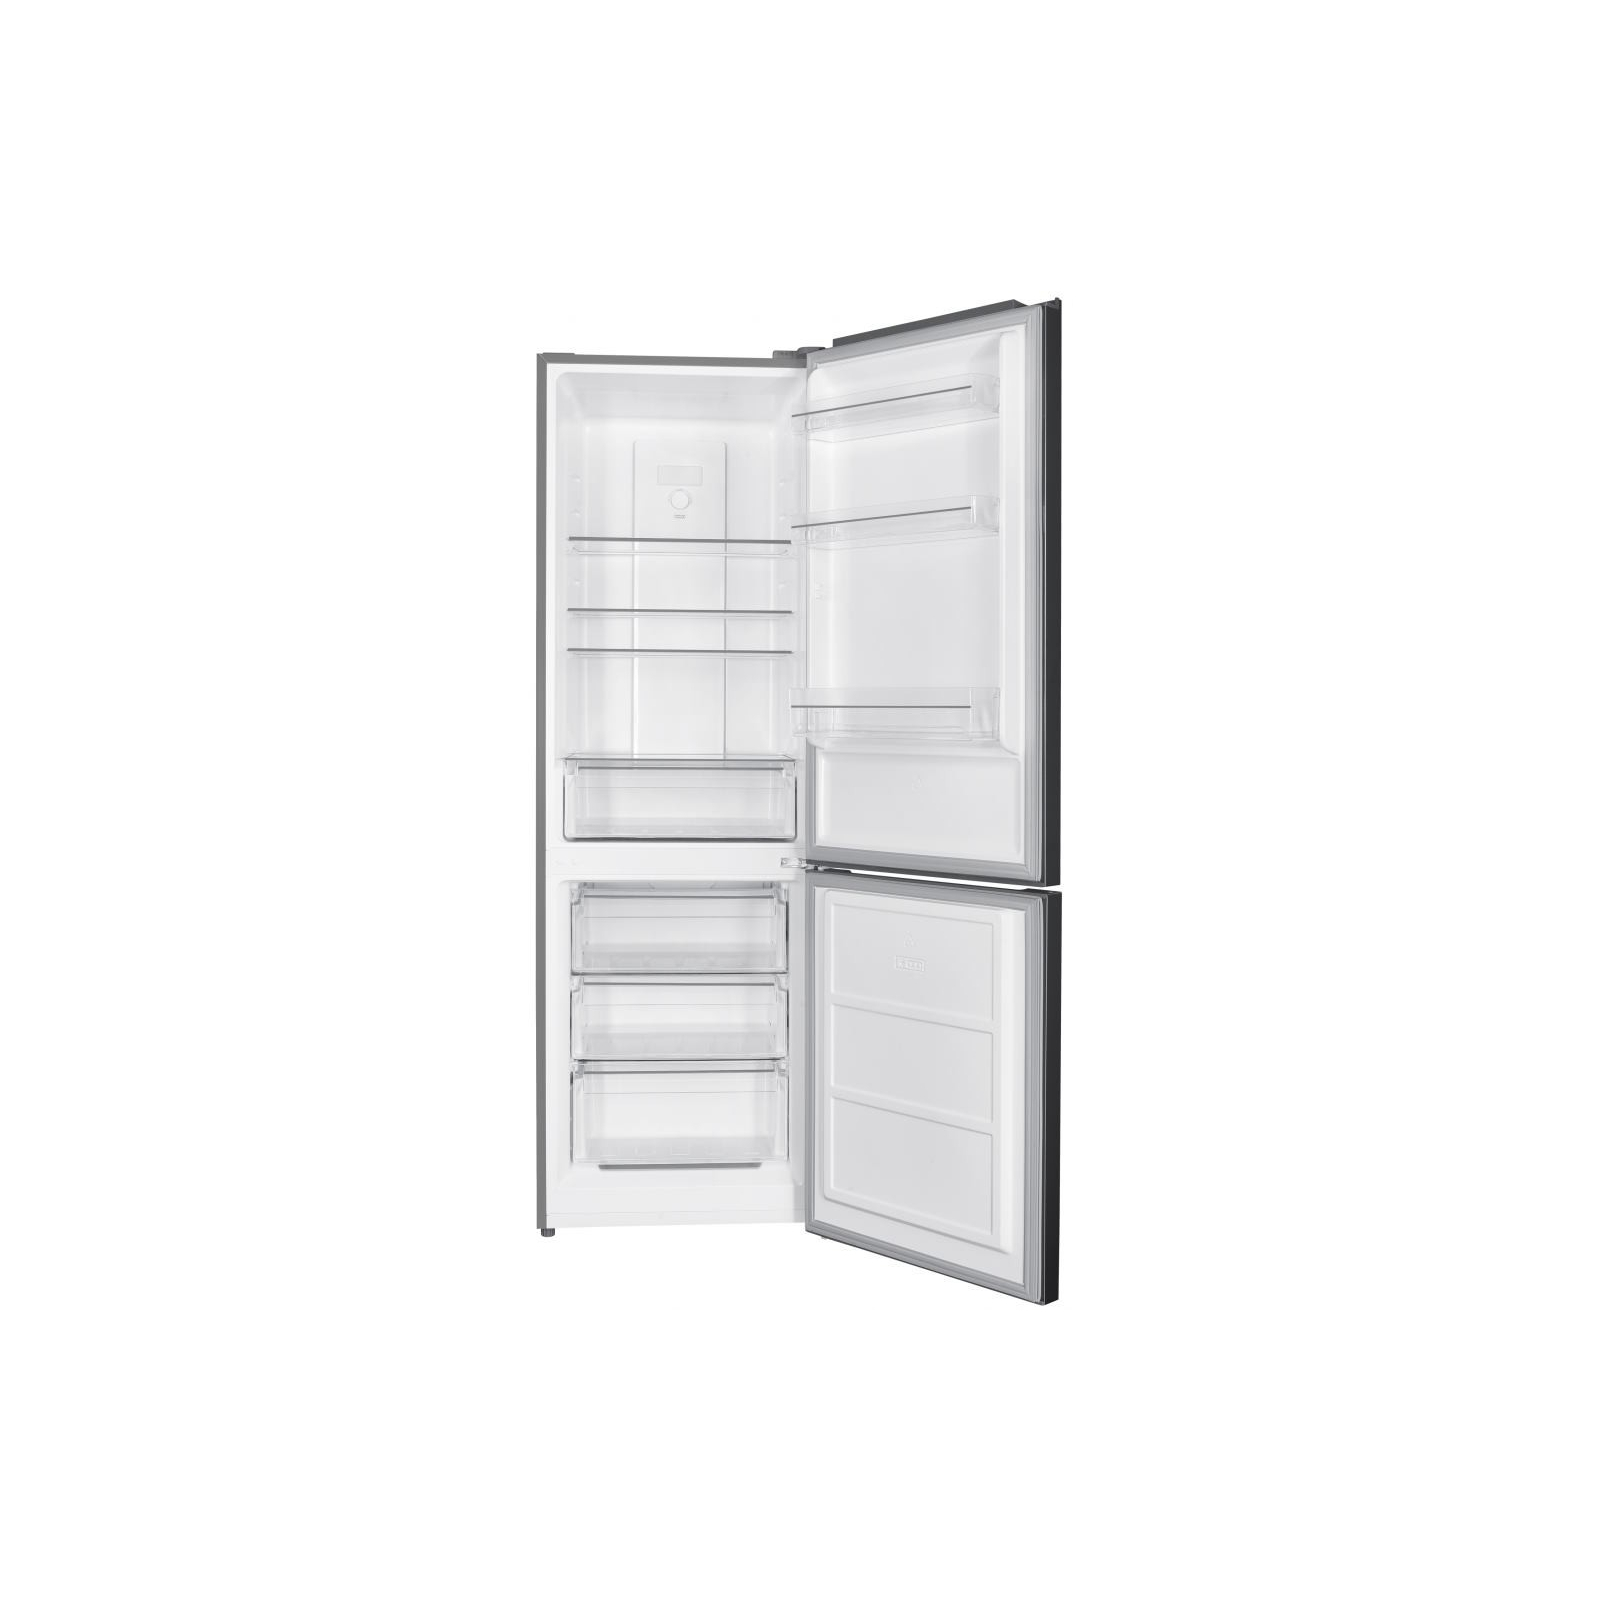 Холодильник HEINNER HCNF-HM293XF+ изображение 2